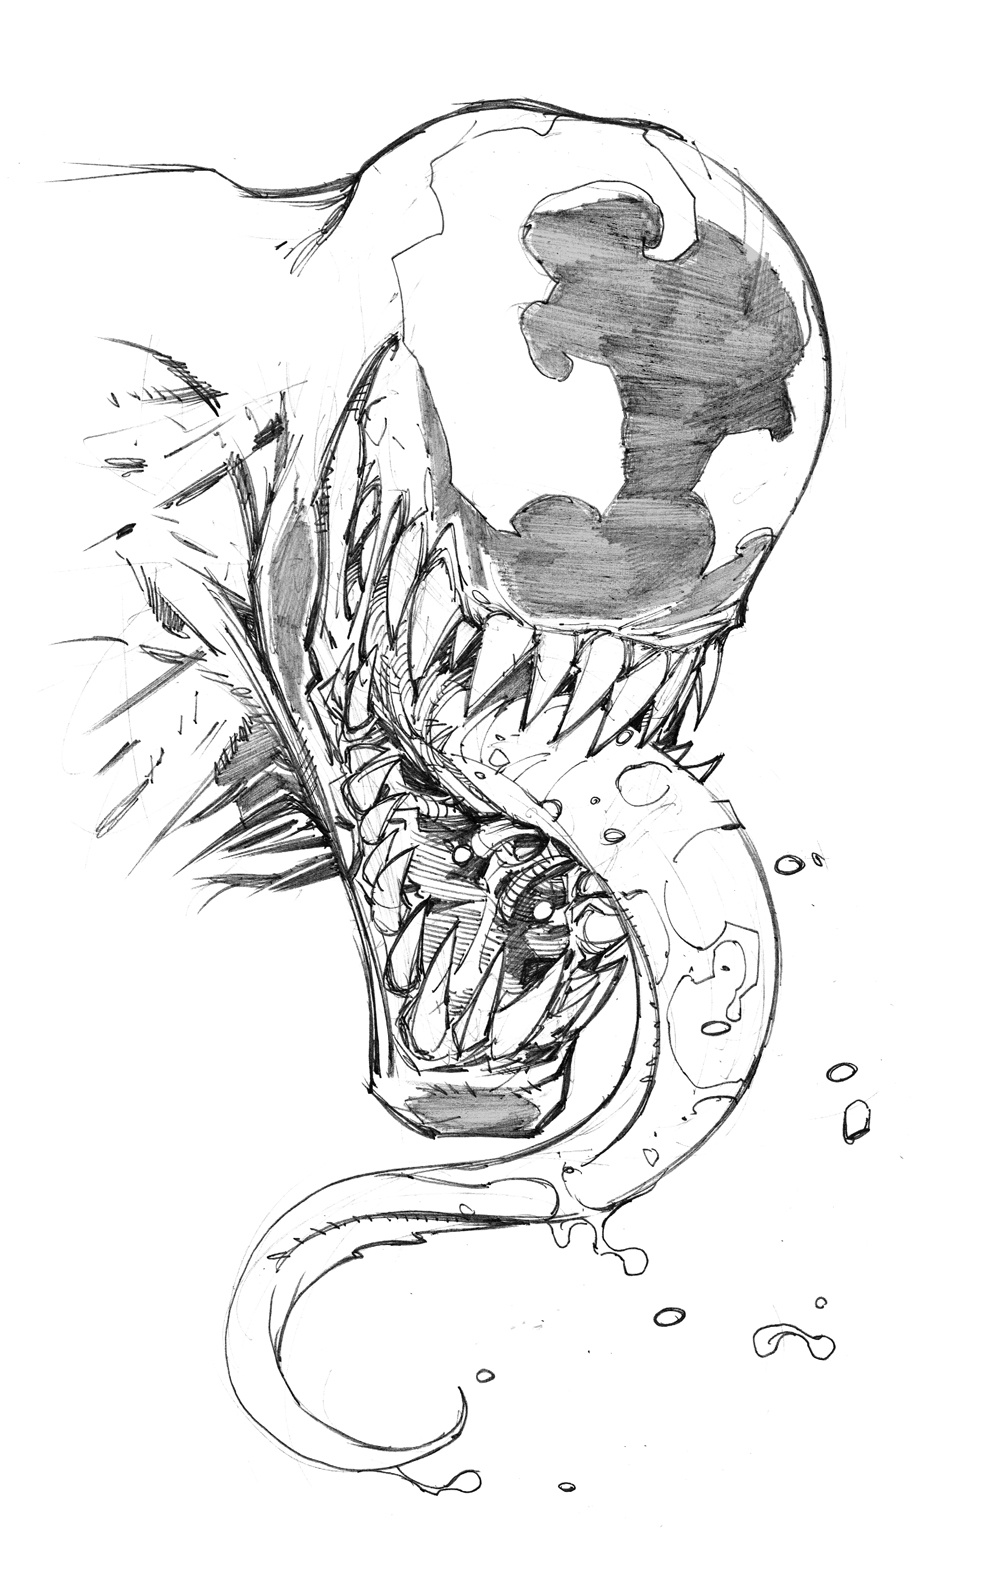 Venom Sketch